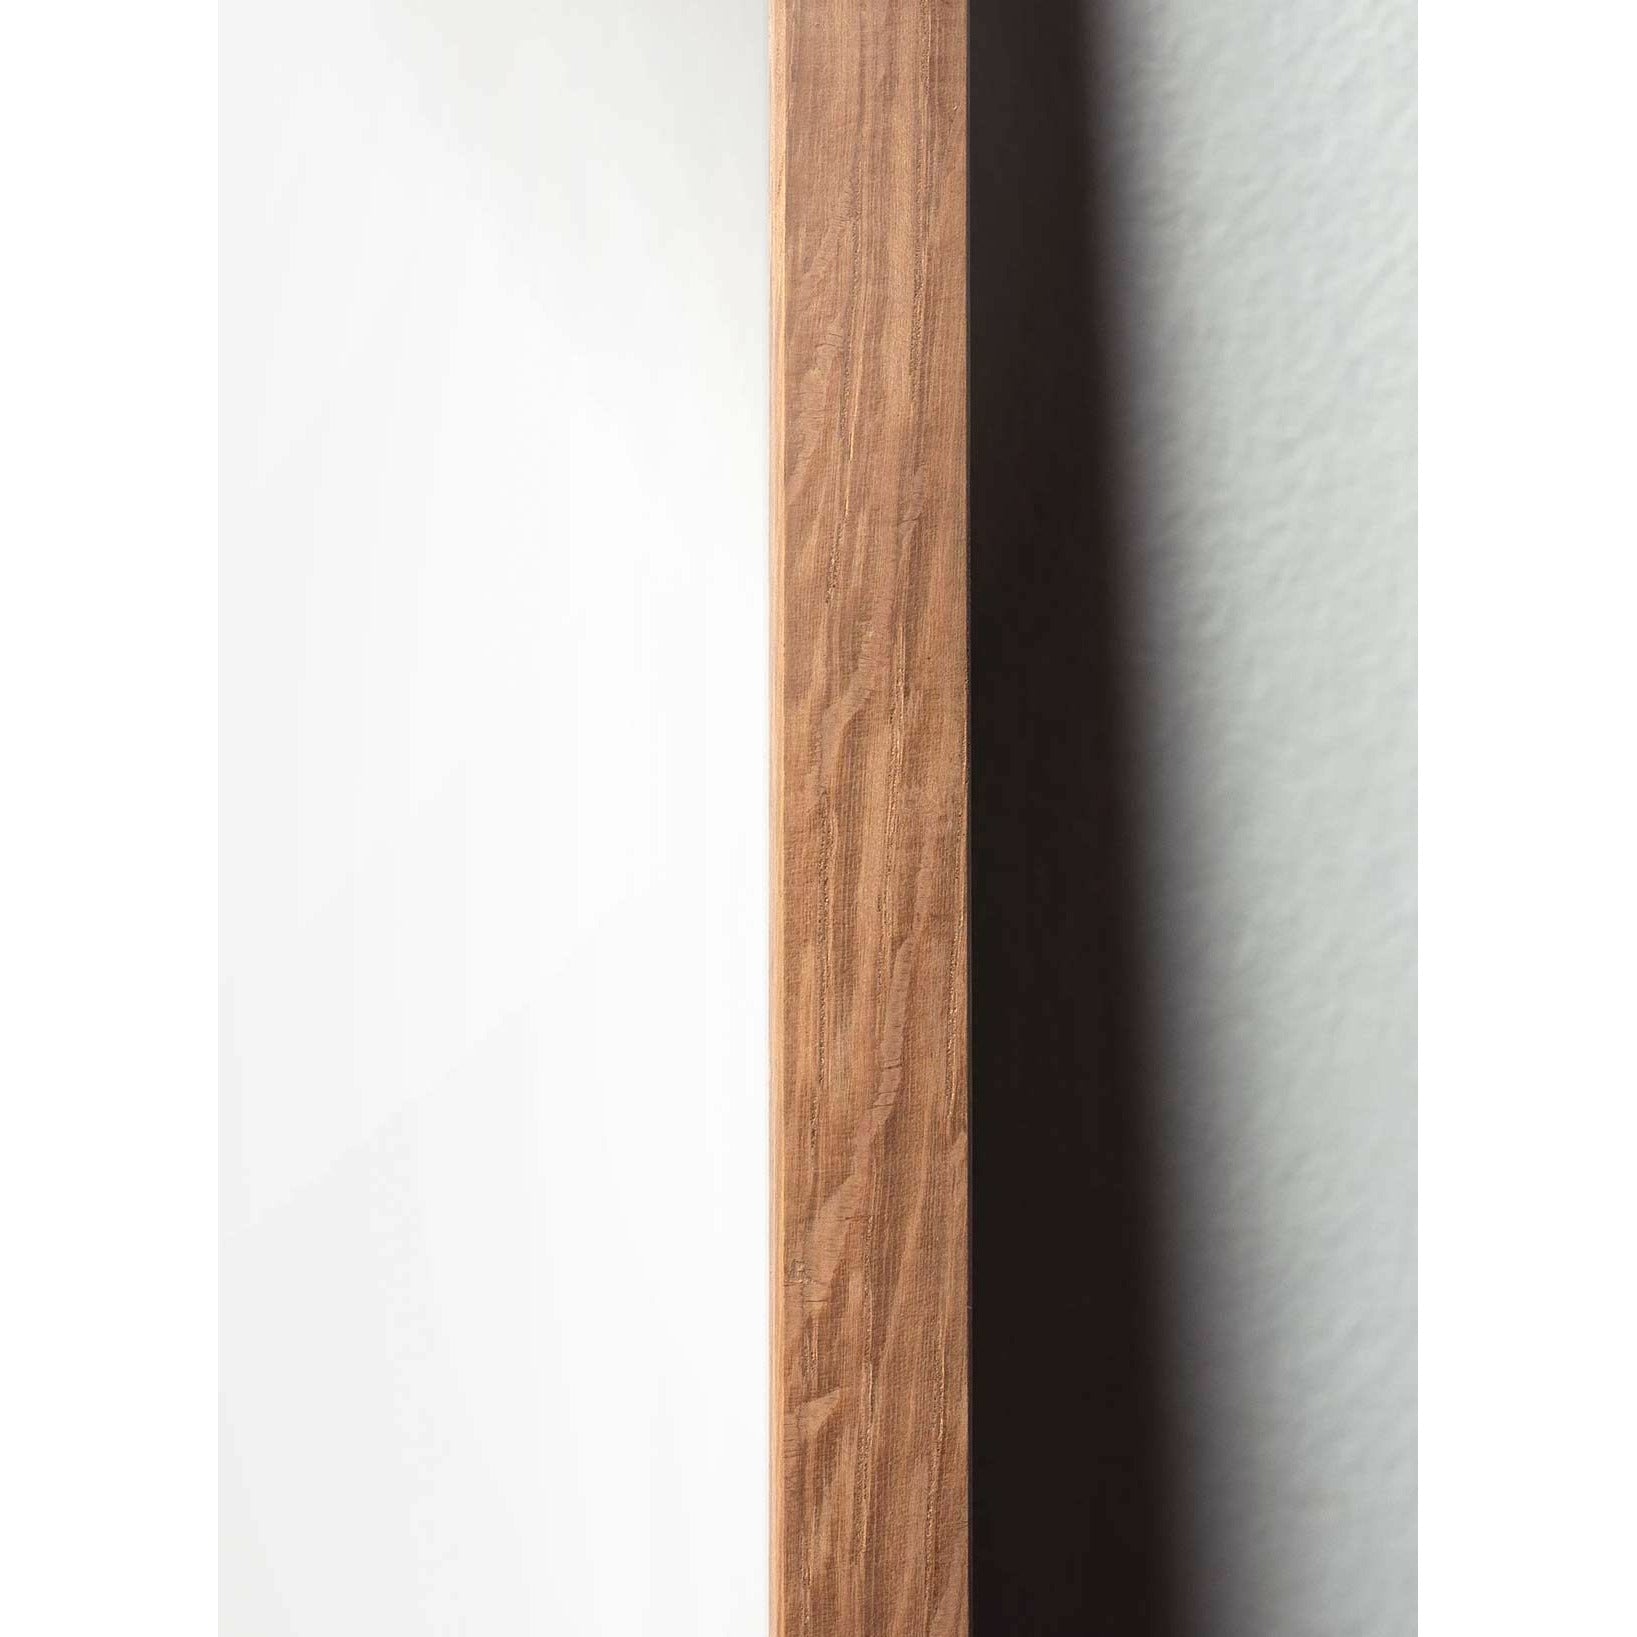 Póster clásico de cono de pino de creación, marco hecho de madera clara A5, fondo rojo